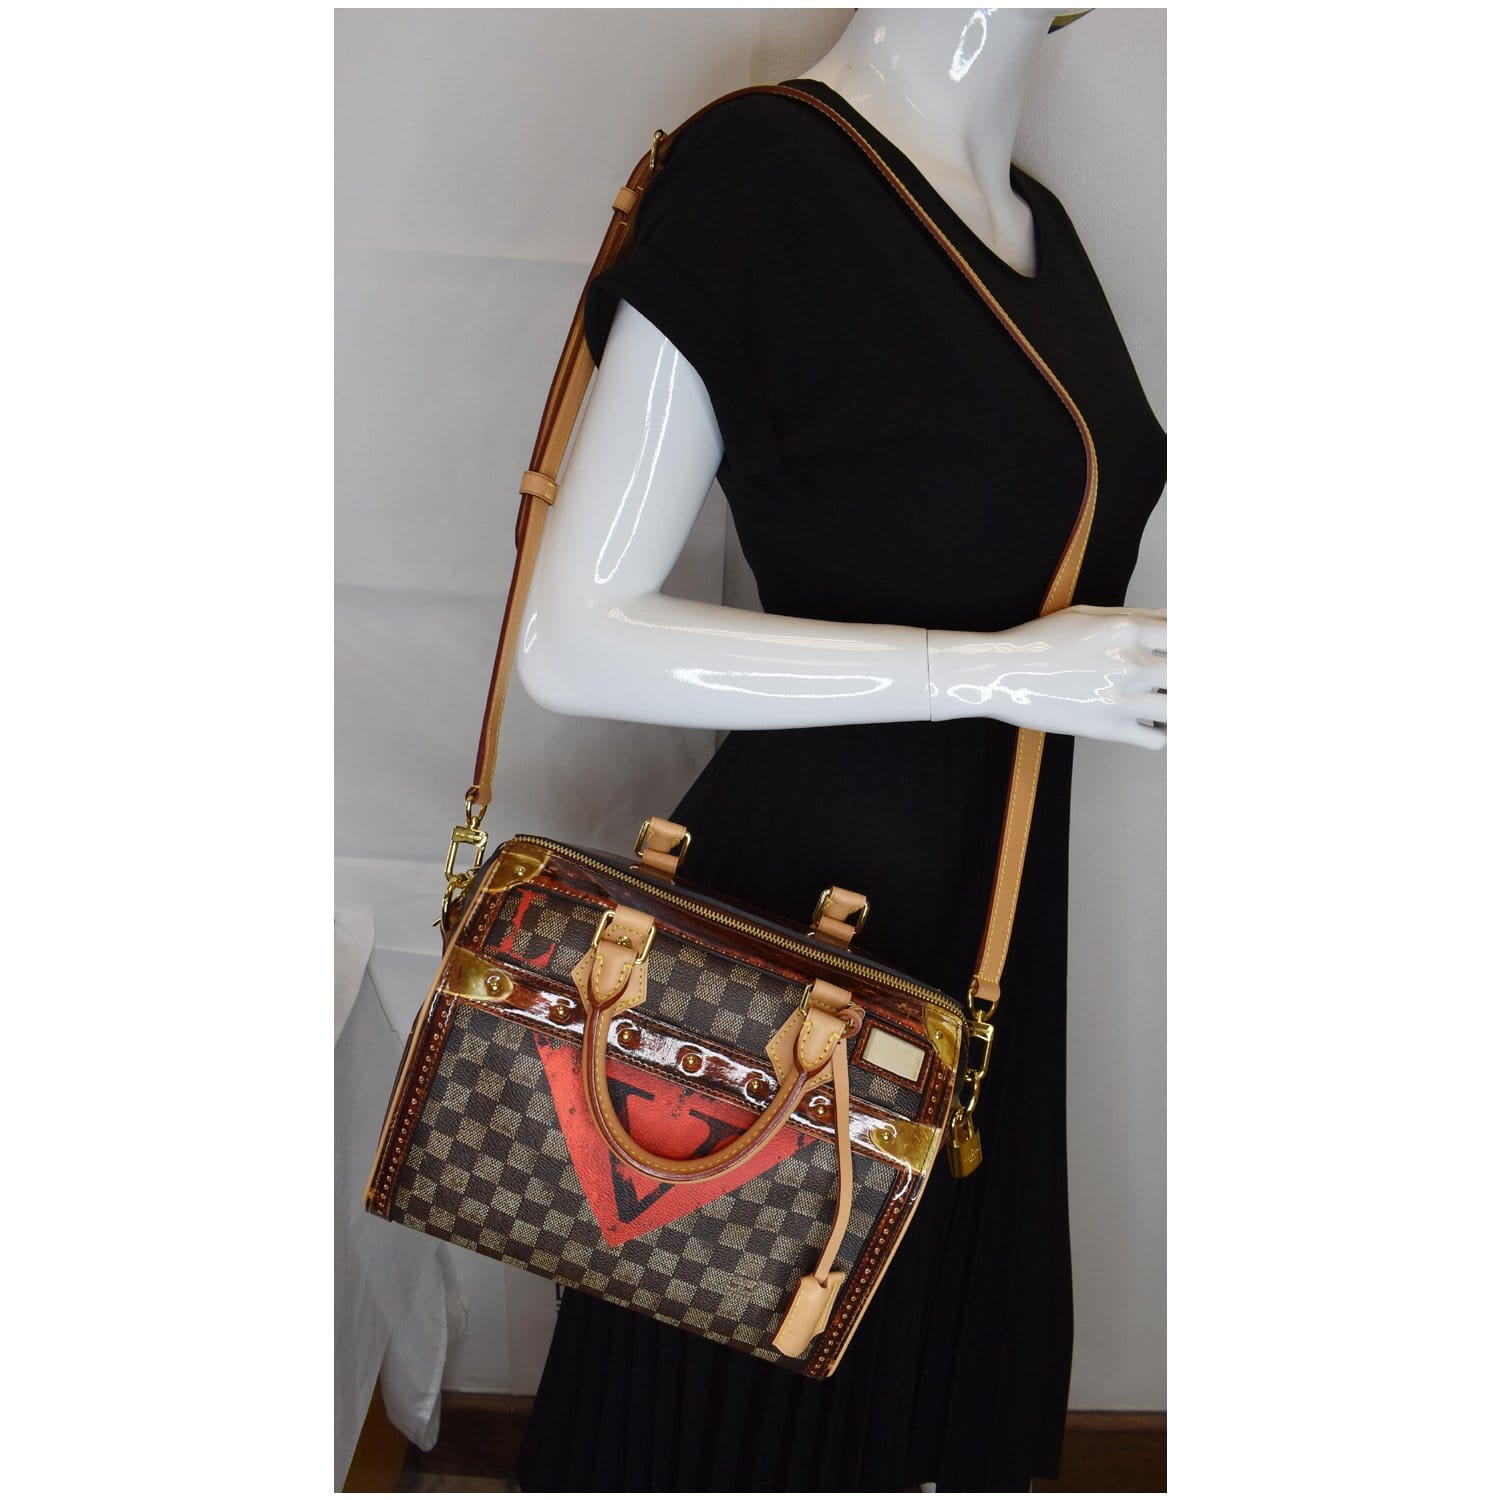 Vintage Louis Vuitton Speedy 25 Bag With Locker